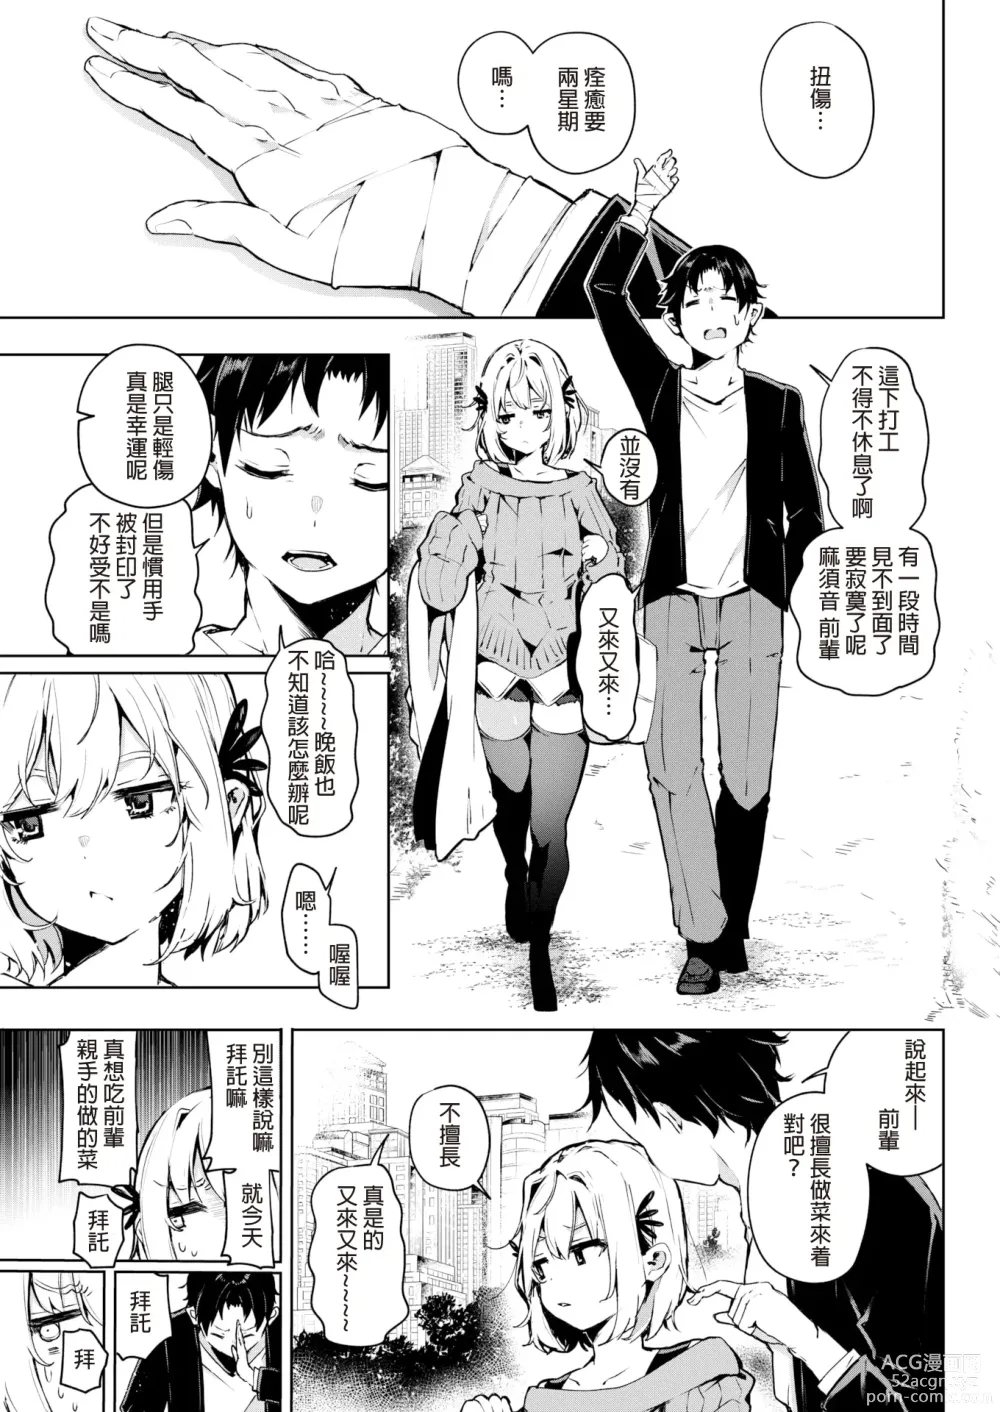 Page 3 of manga 何だかんだ言いながら